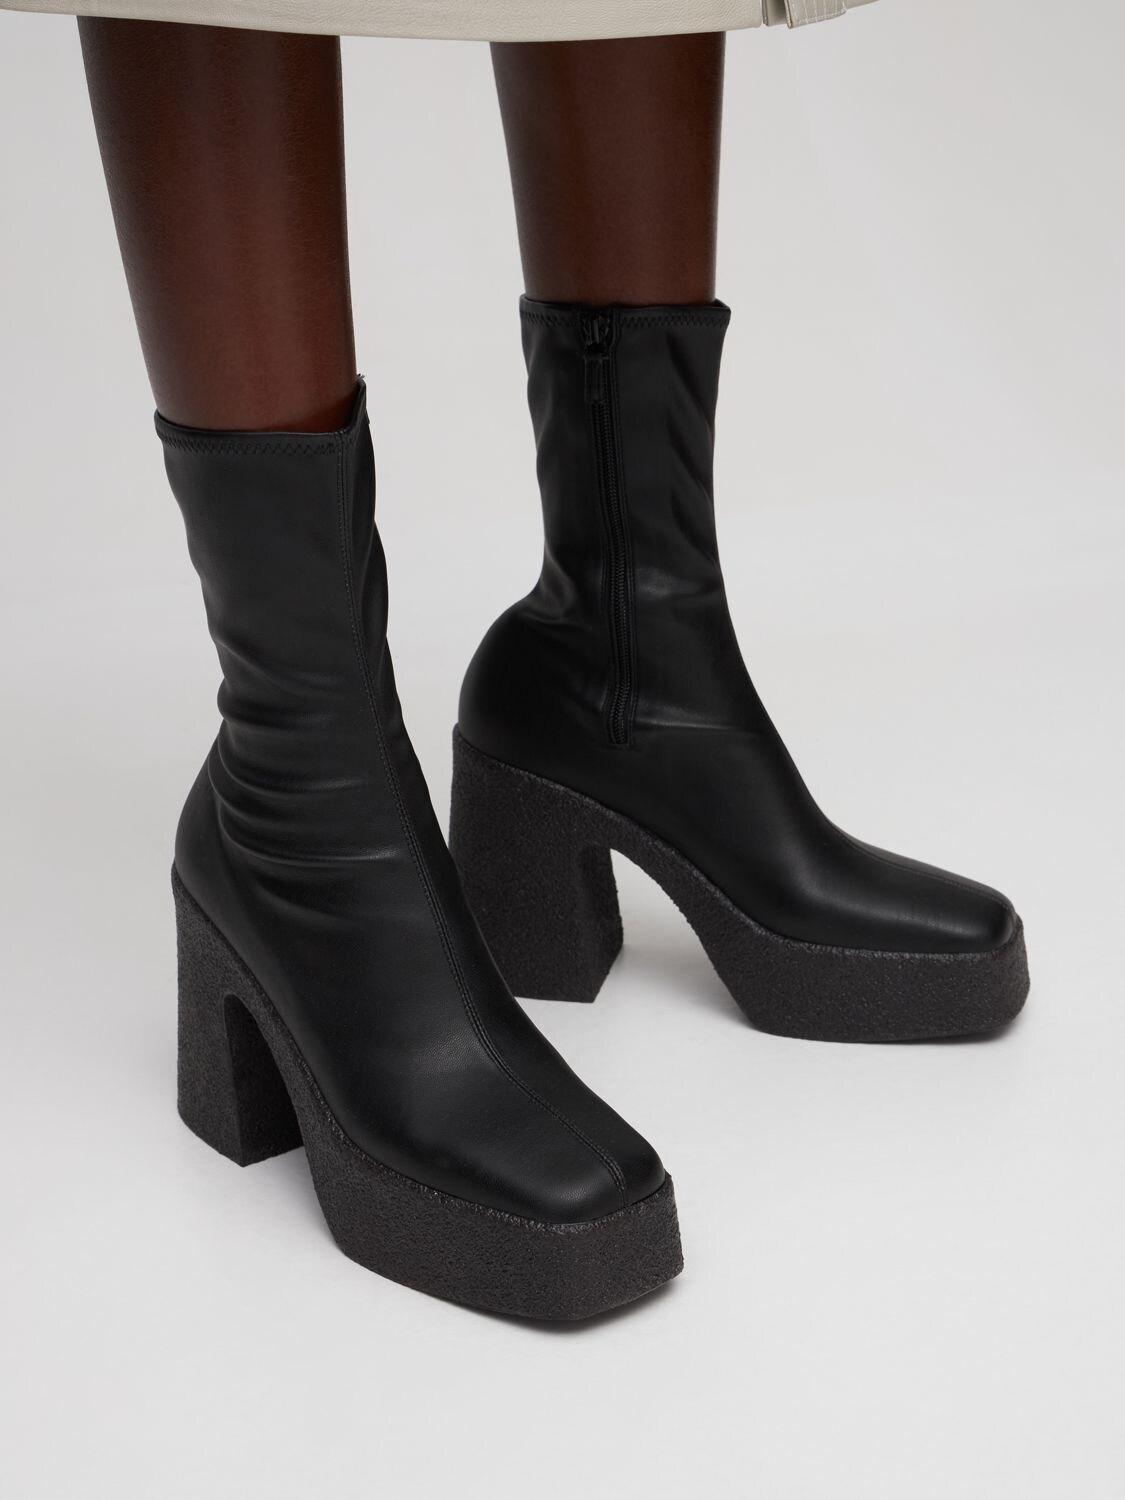 Stella McCartney 110mm Skyla Faux Leather Ankle Boots in Black | Lyst